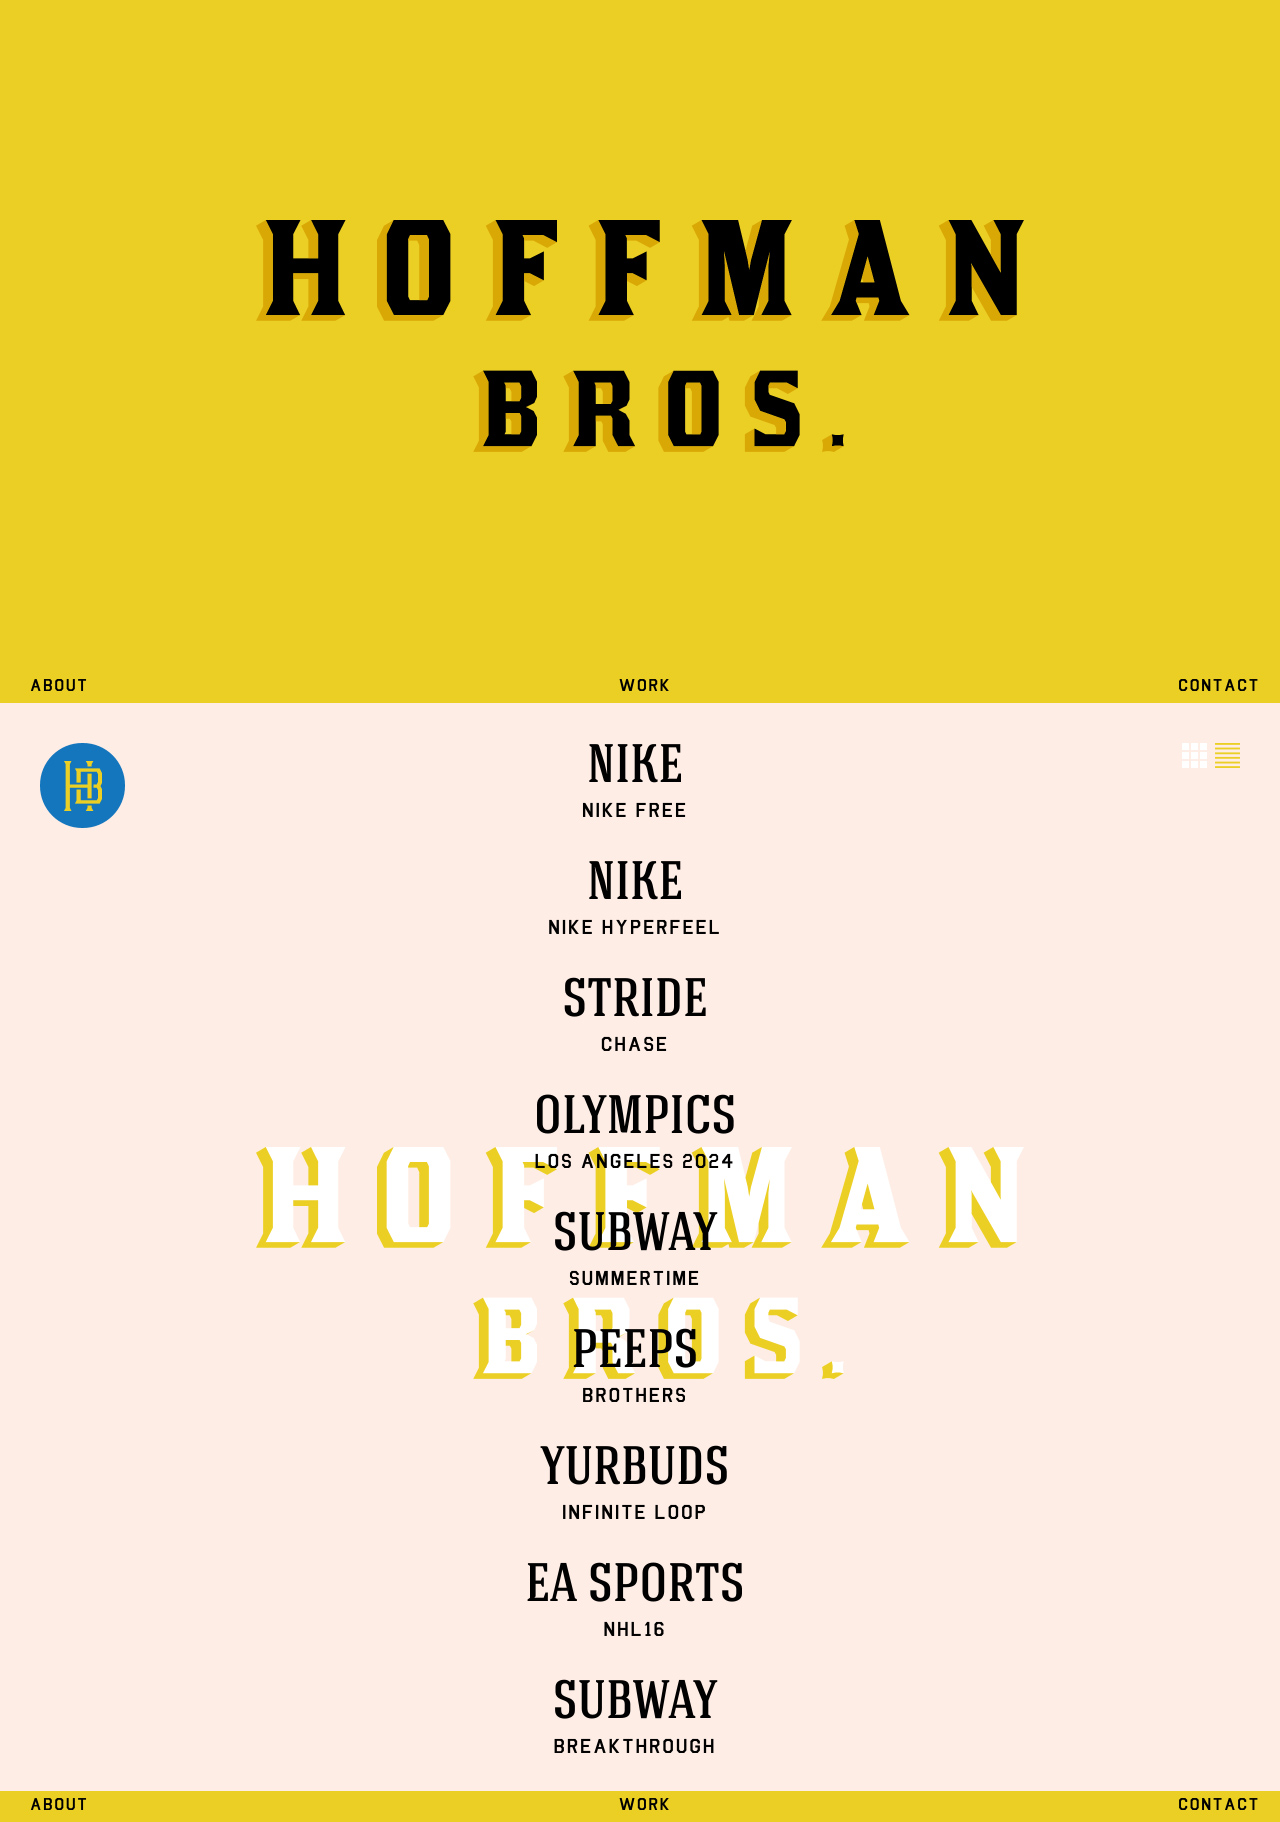 Hoffman Bros Website Screenshot